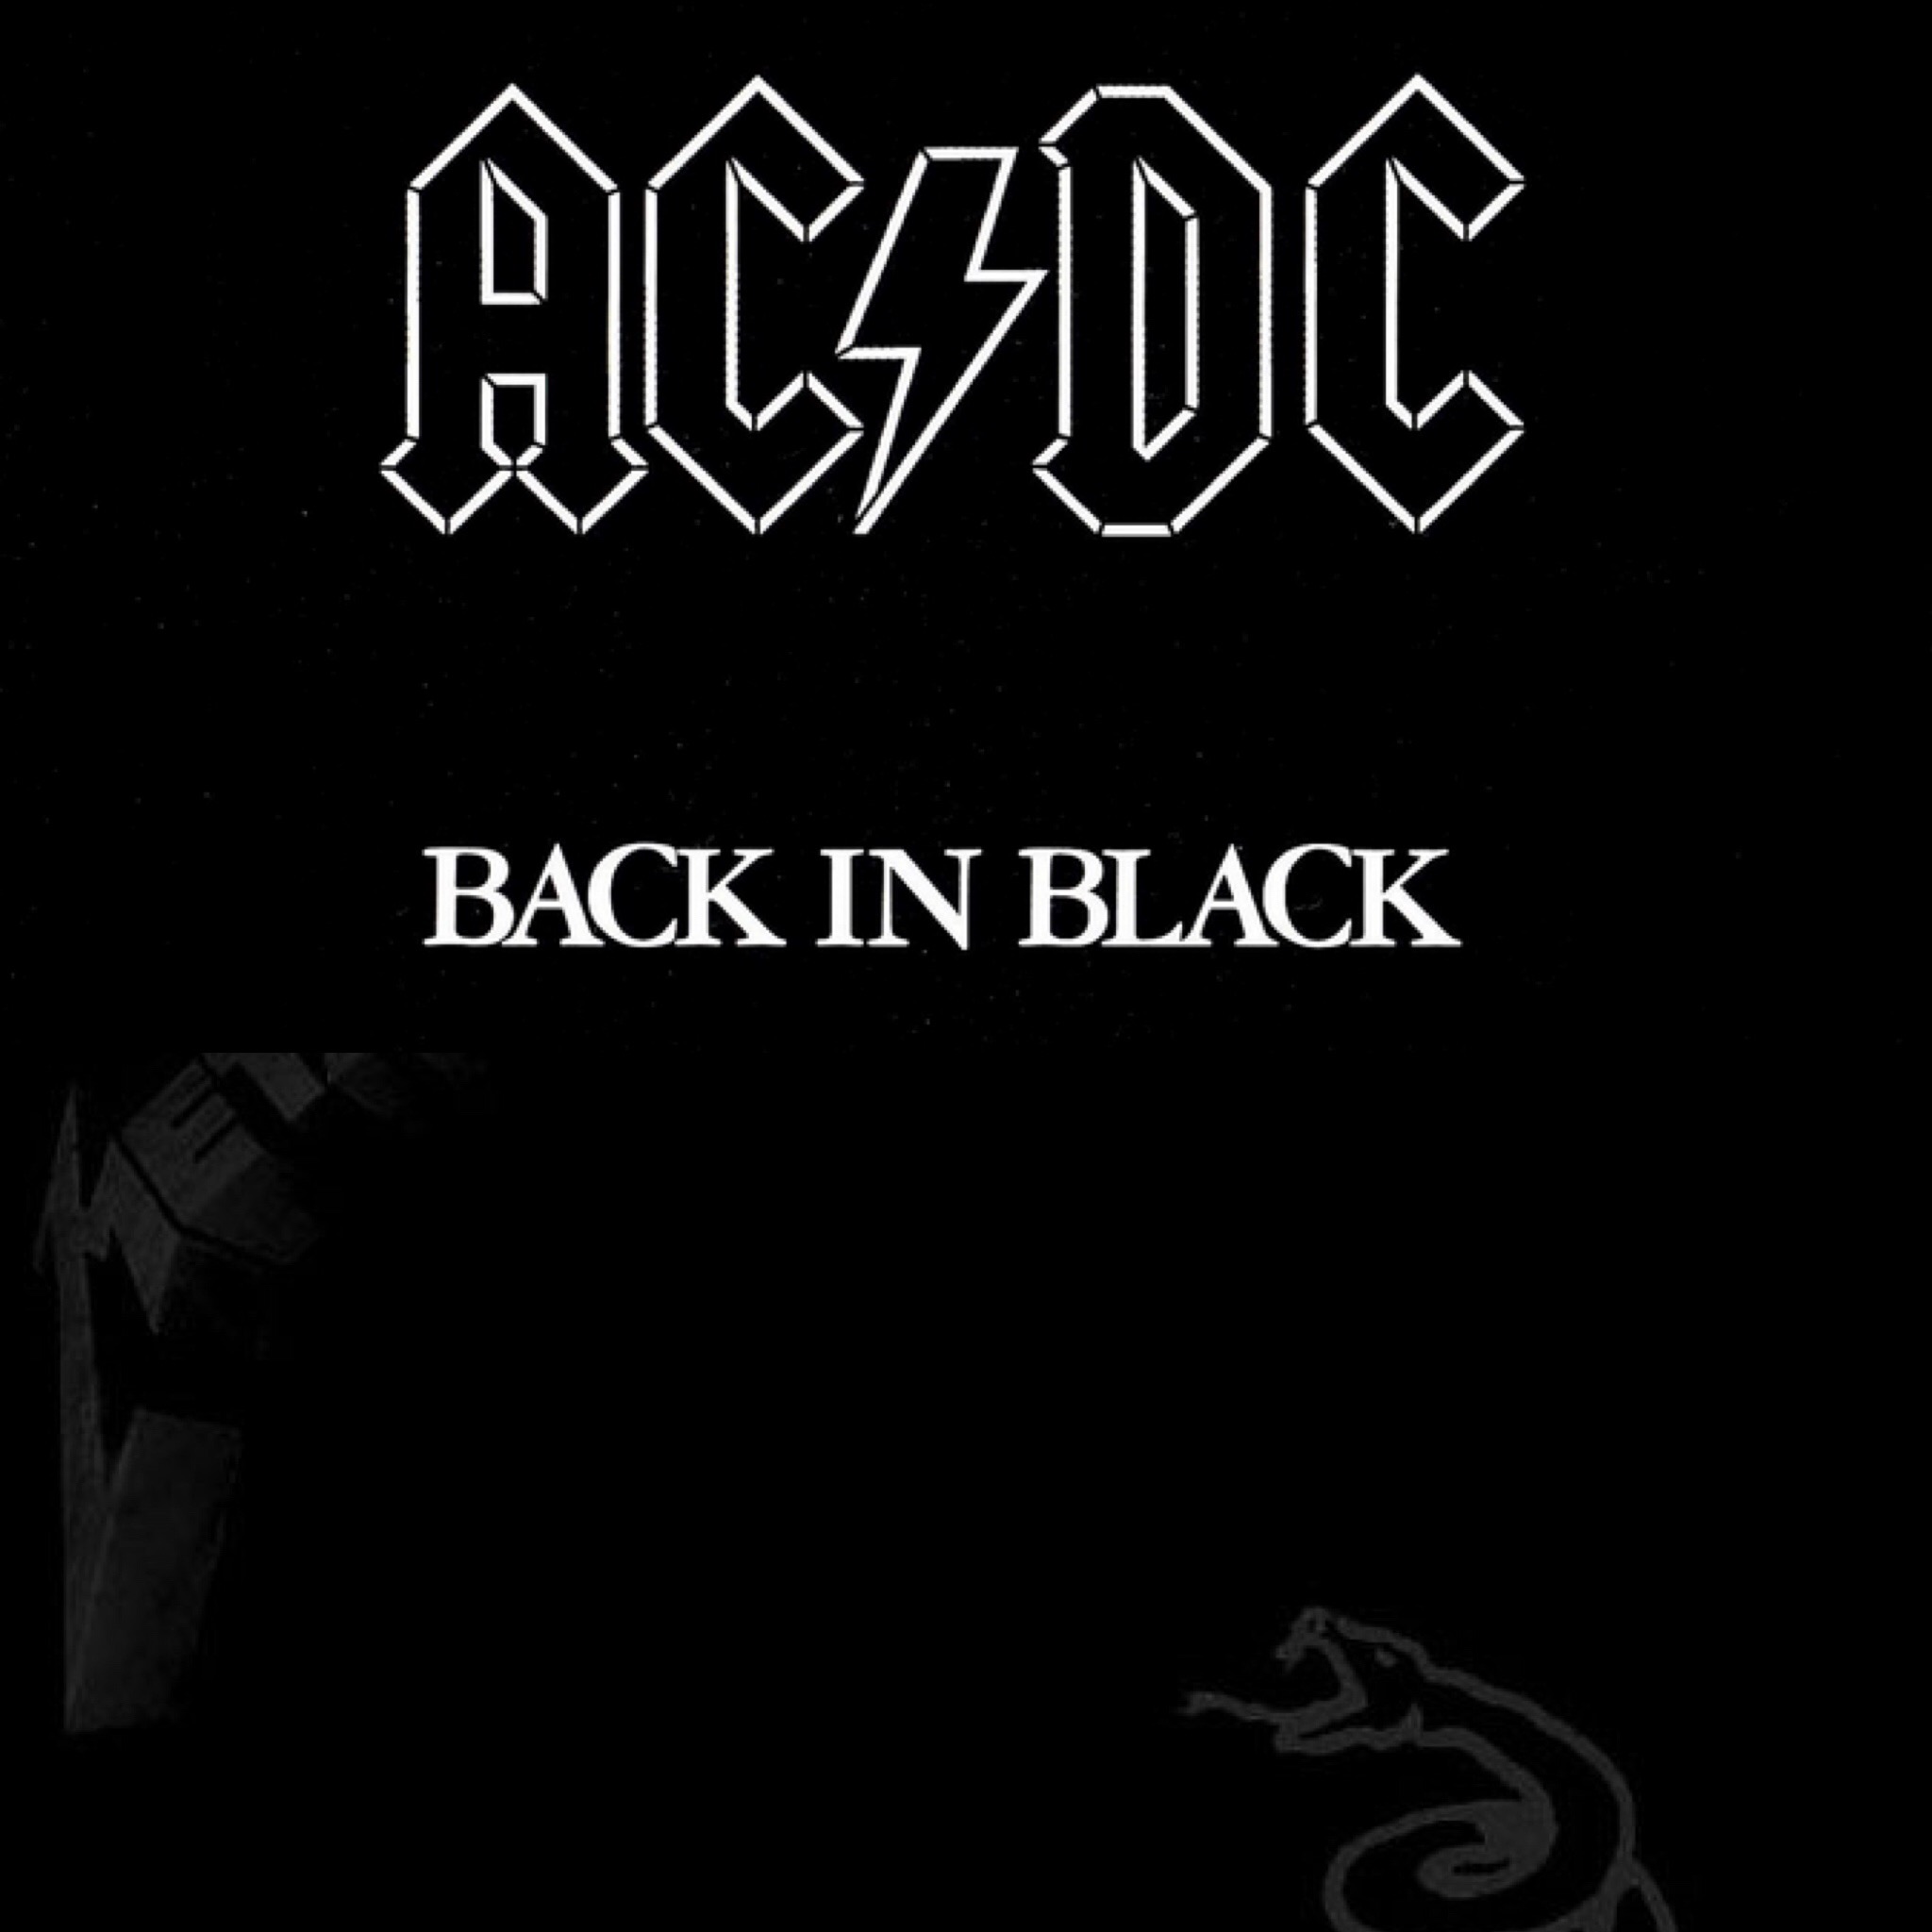 Back i black. Back in Black альбом. АС ДС бэк ин Блэк. Back in Black обложка. AC DC back in Black альбом.